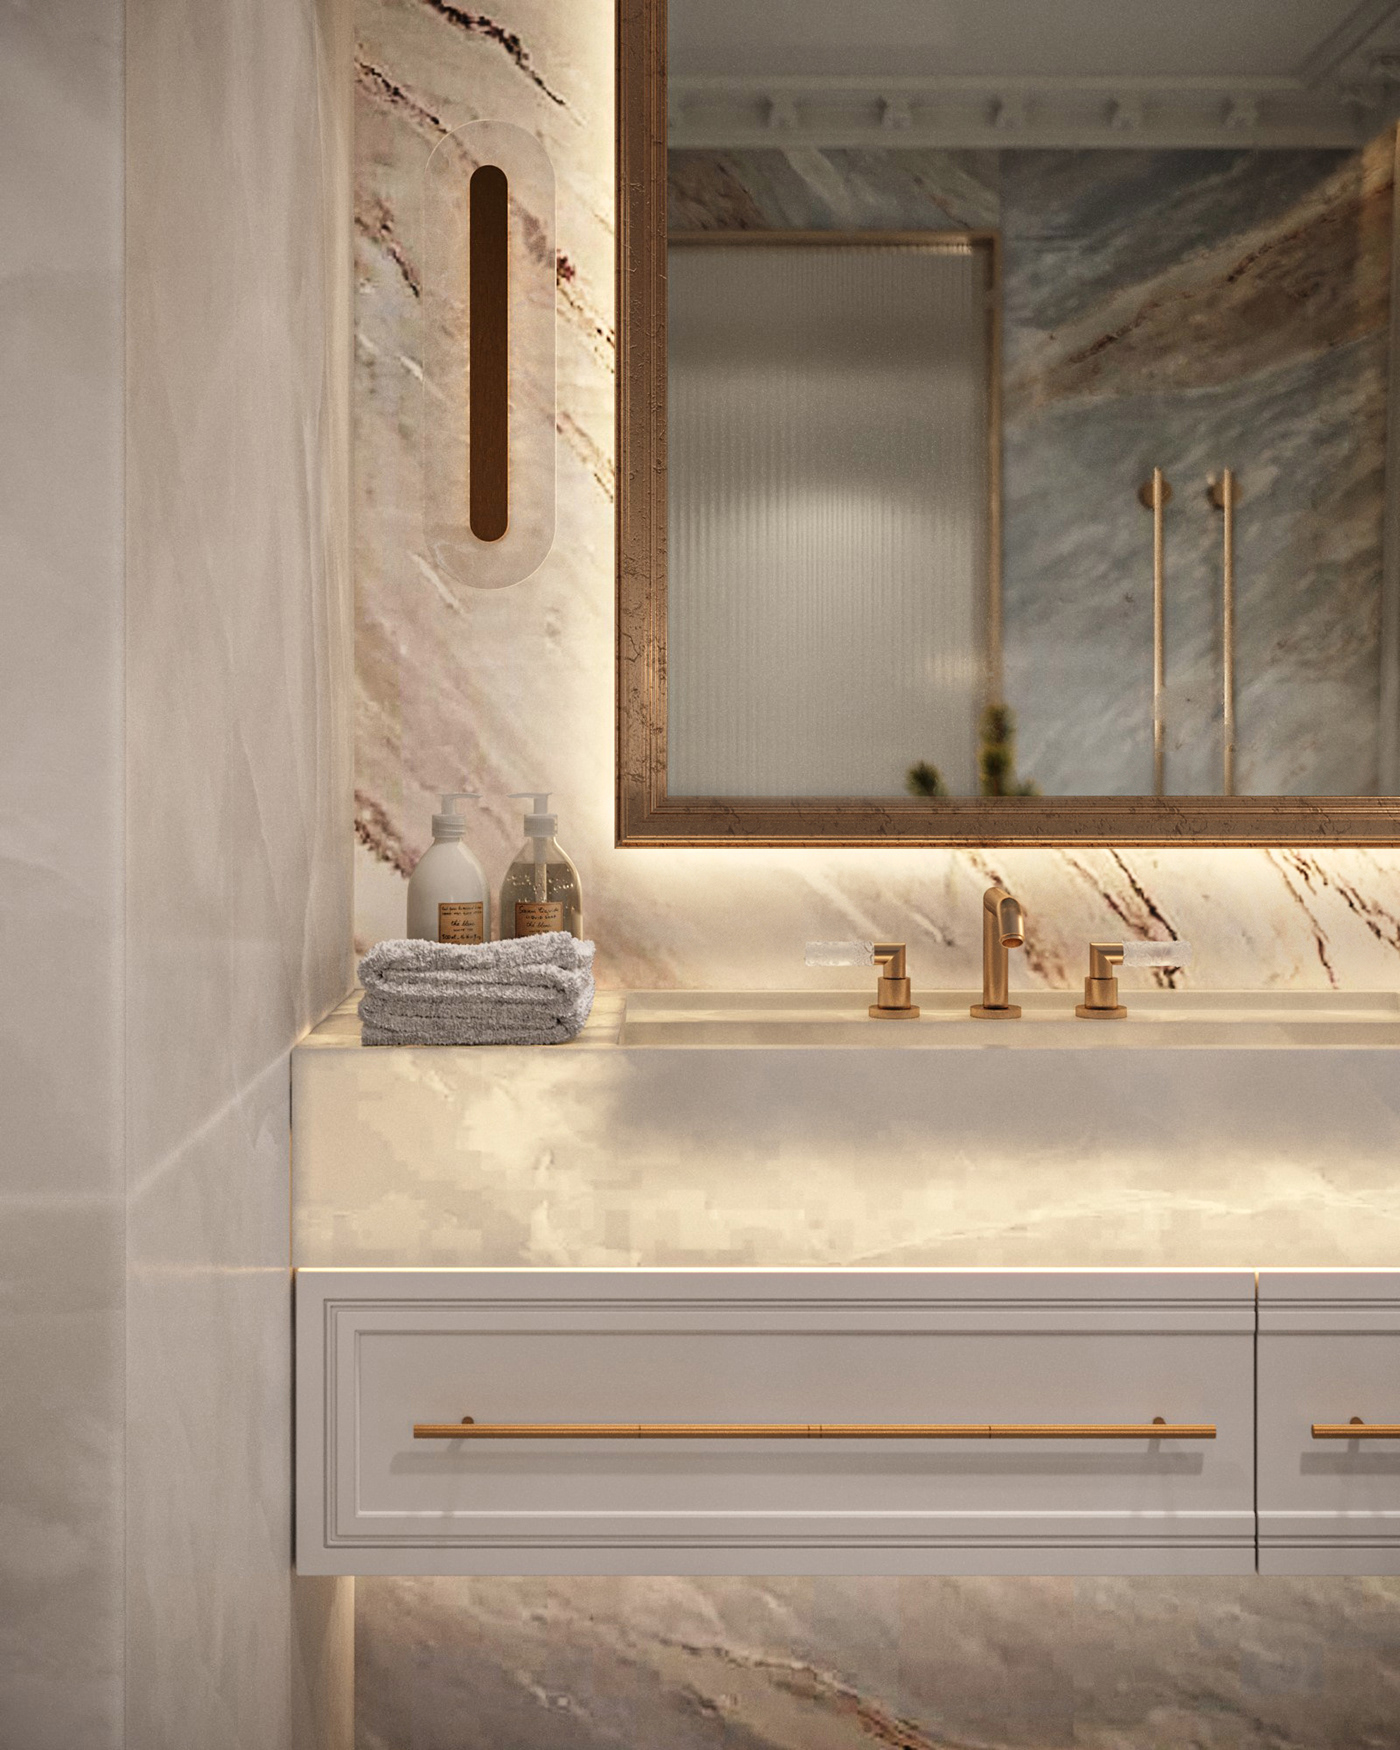 bathroom design visualization archviz interior design  Визуализация интерьера дизайн интерьера ванная комната дизайн ванной Санузел Interior Visualization